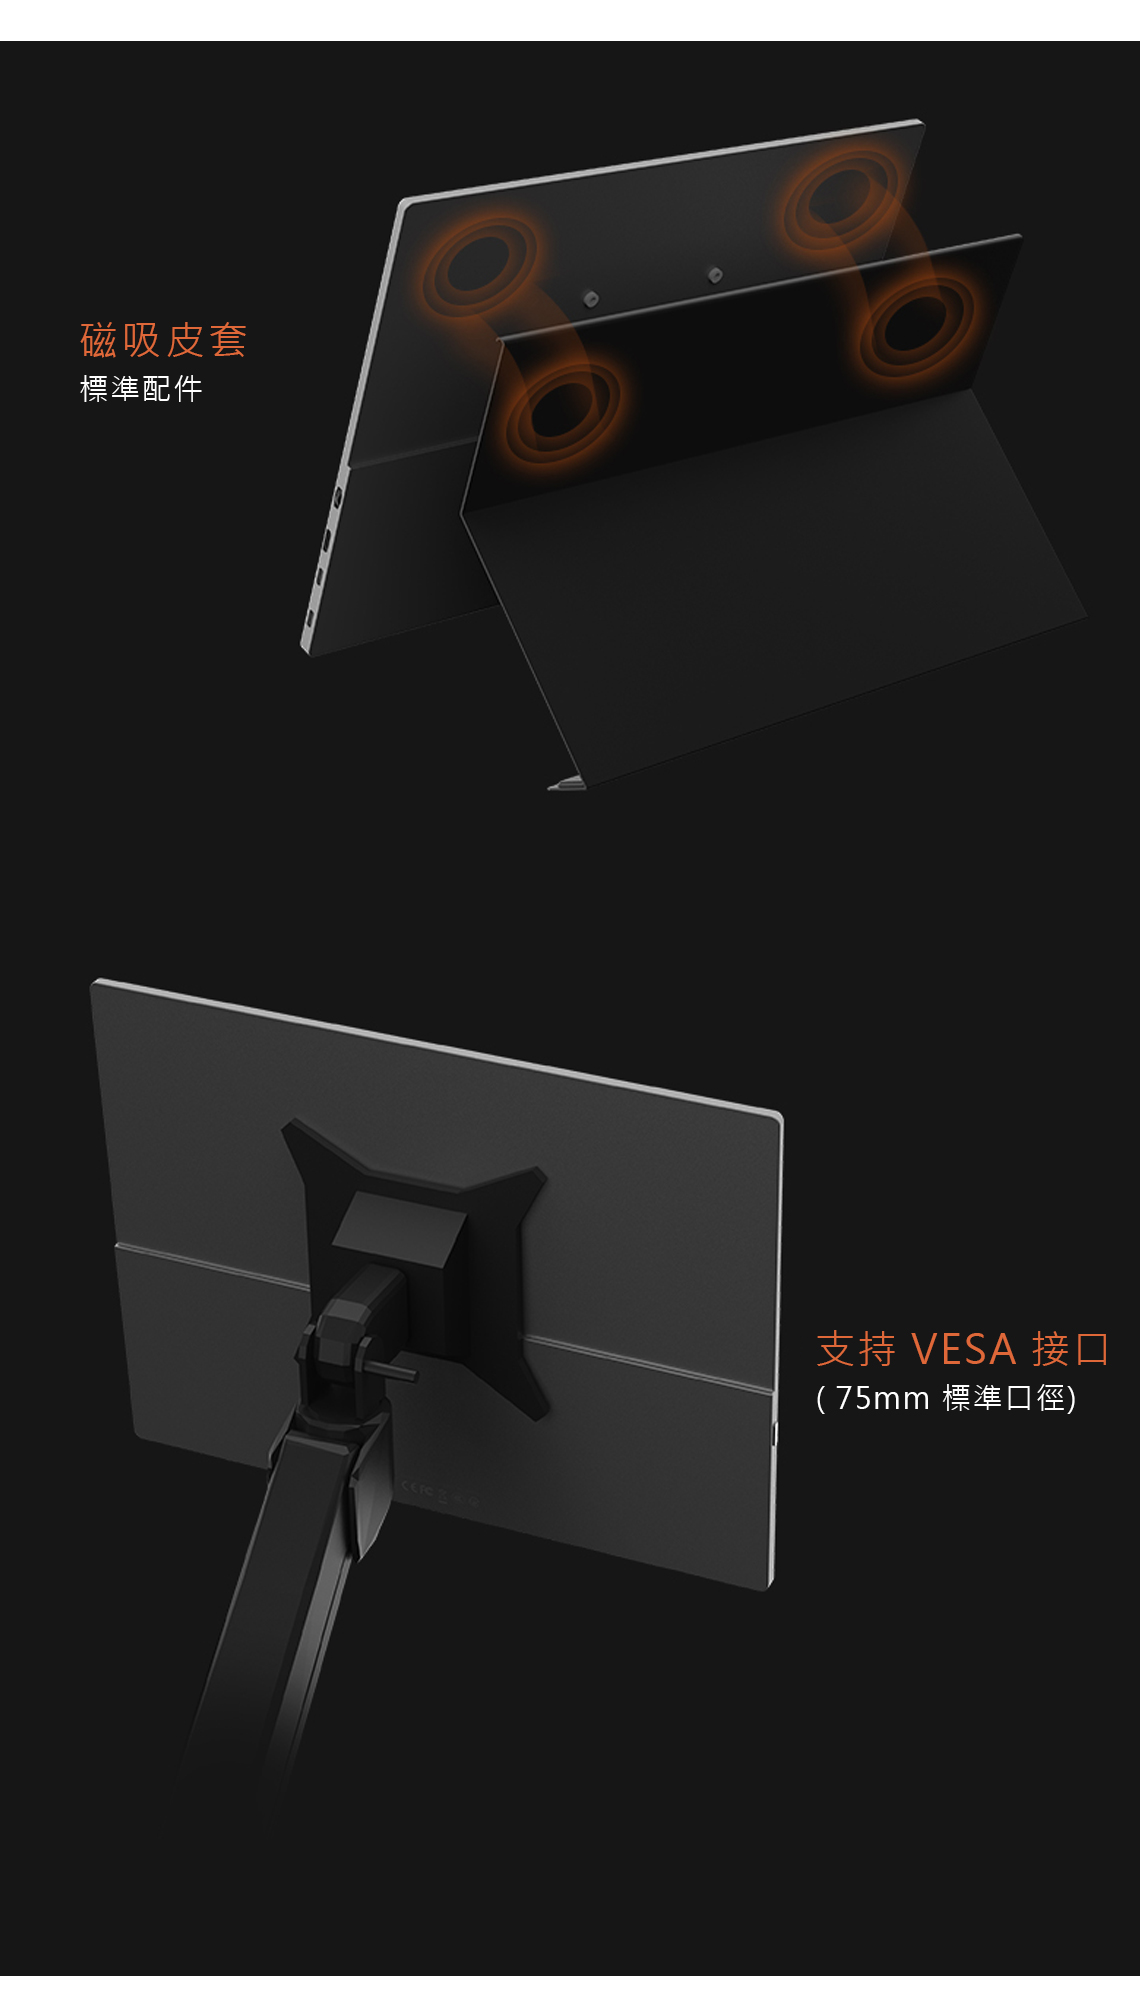 磁吸皮套標準配件支持 VESA 接口(75mm 標準口徑)